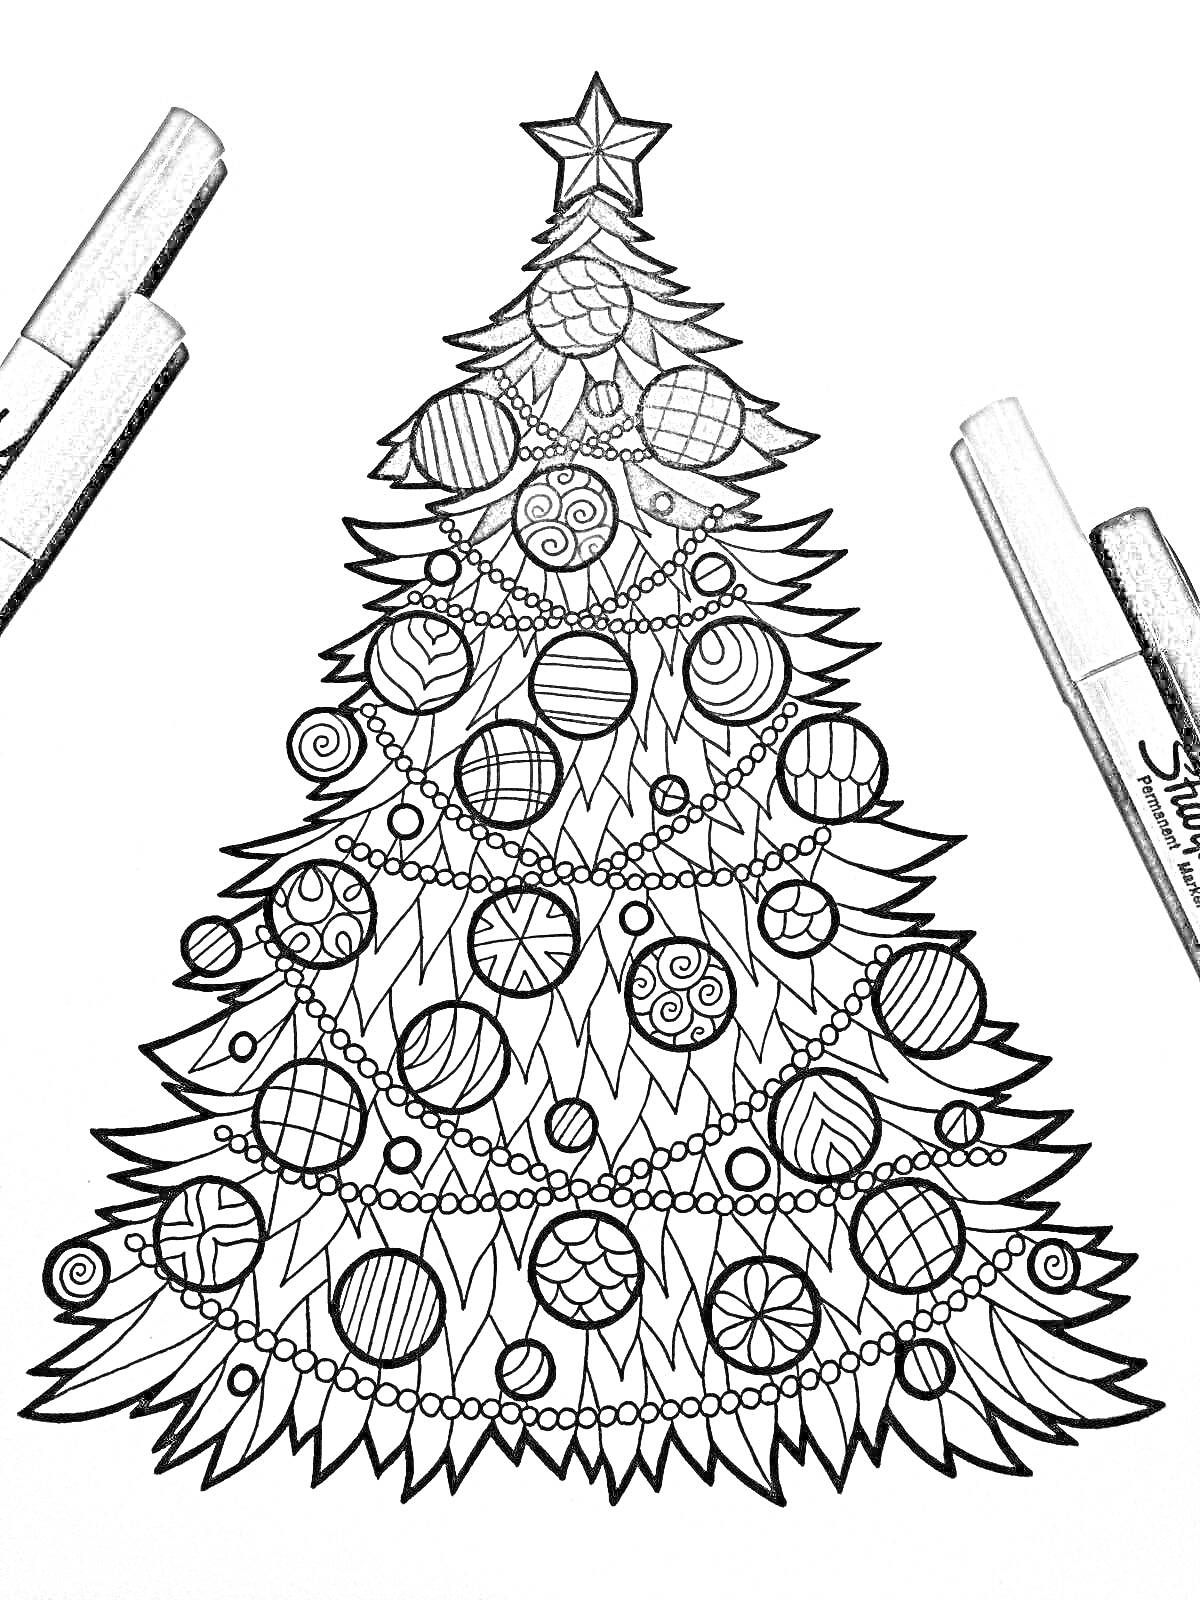 Раскраска рождественская елка с украшениями и звездами, с фломастерами